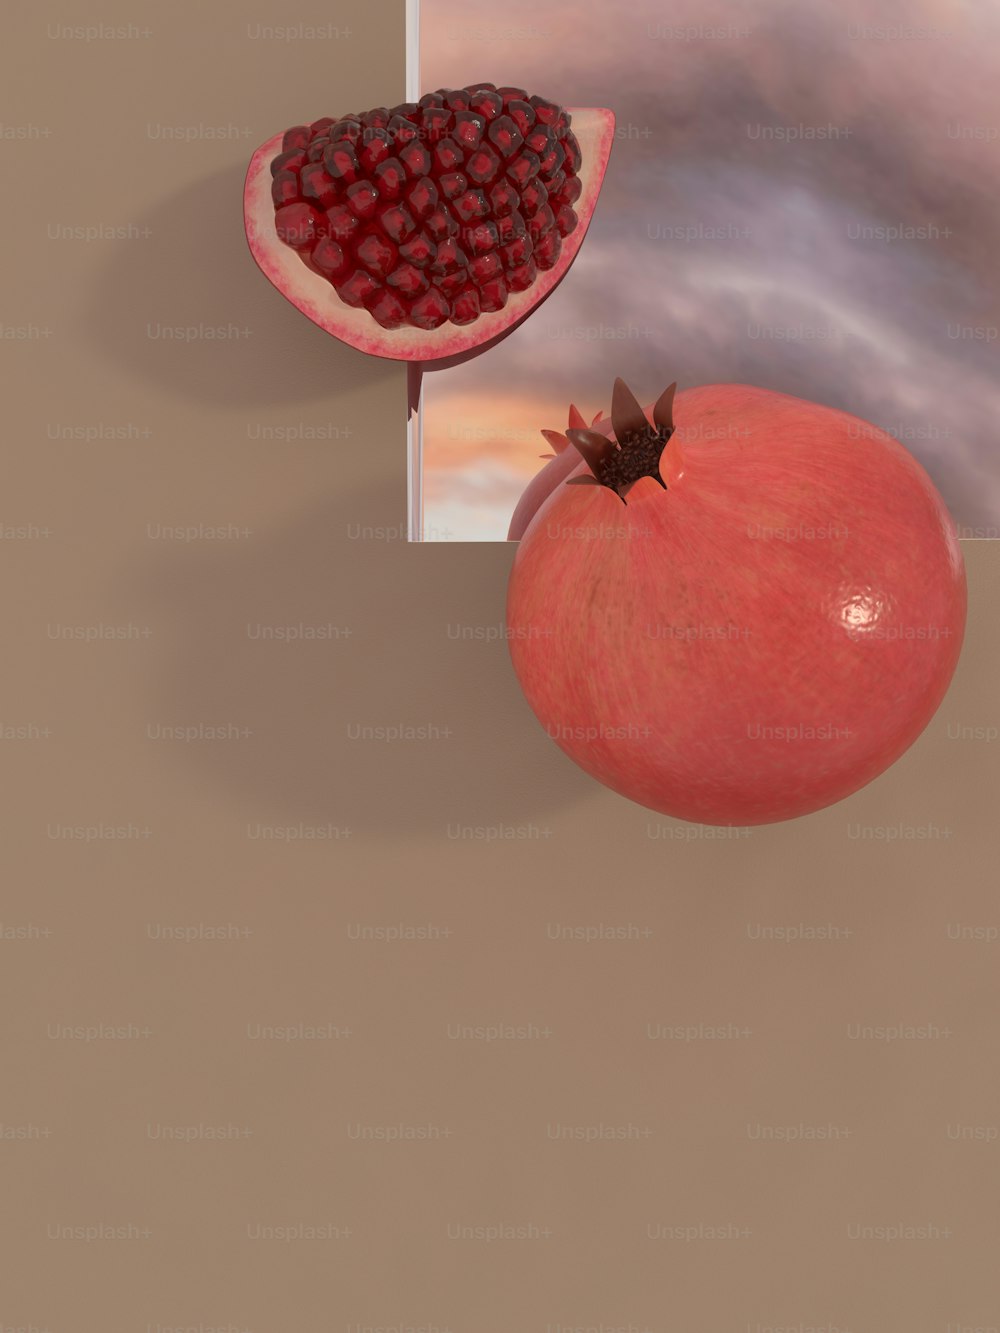 una imagen de una granada y una pieza de fruta